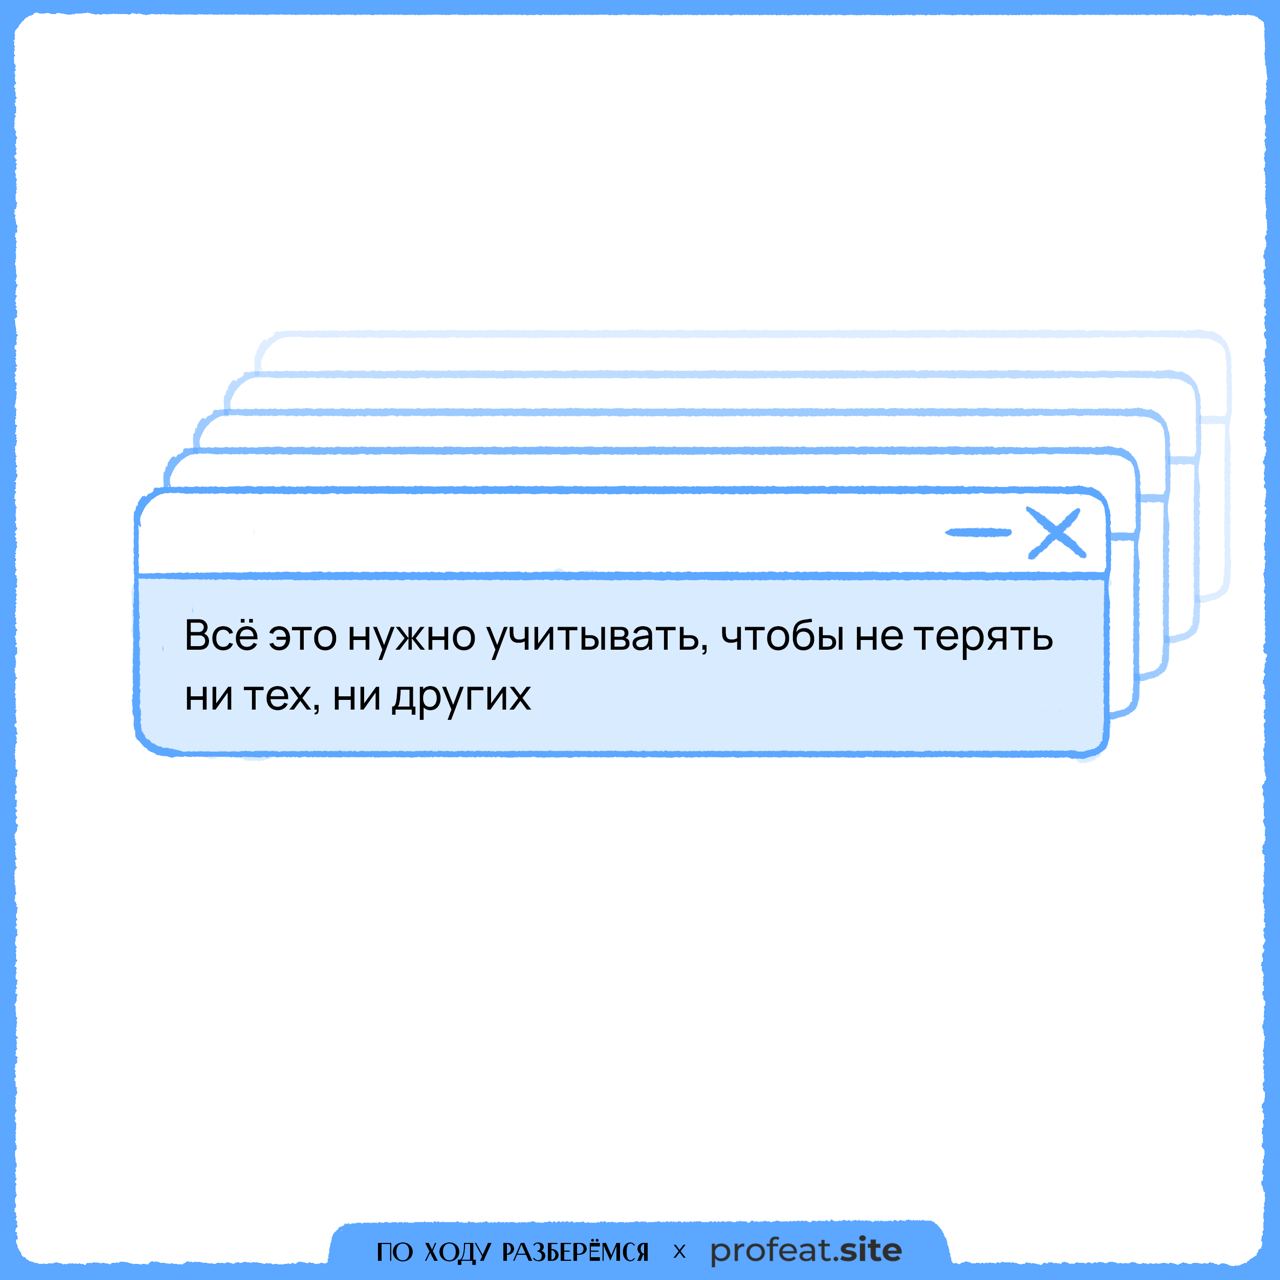 Телеграмм как пишется на русском правильно фото 98